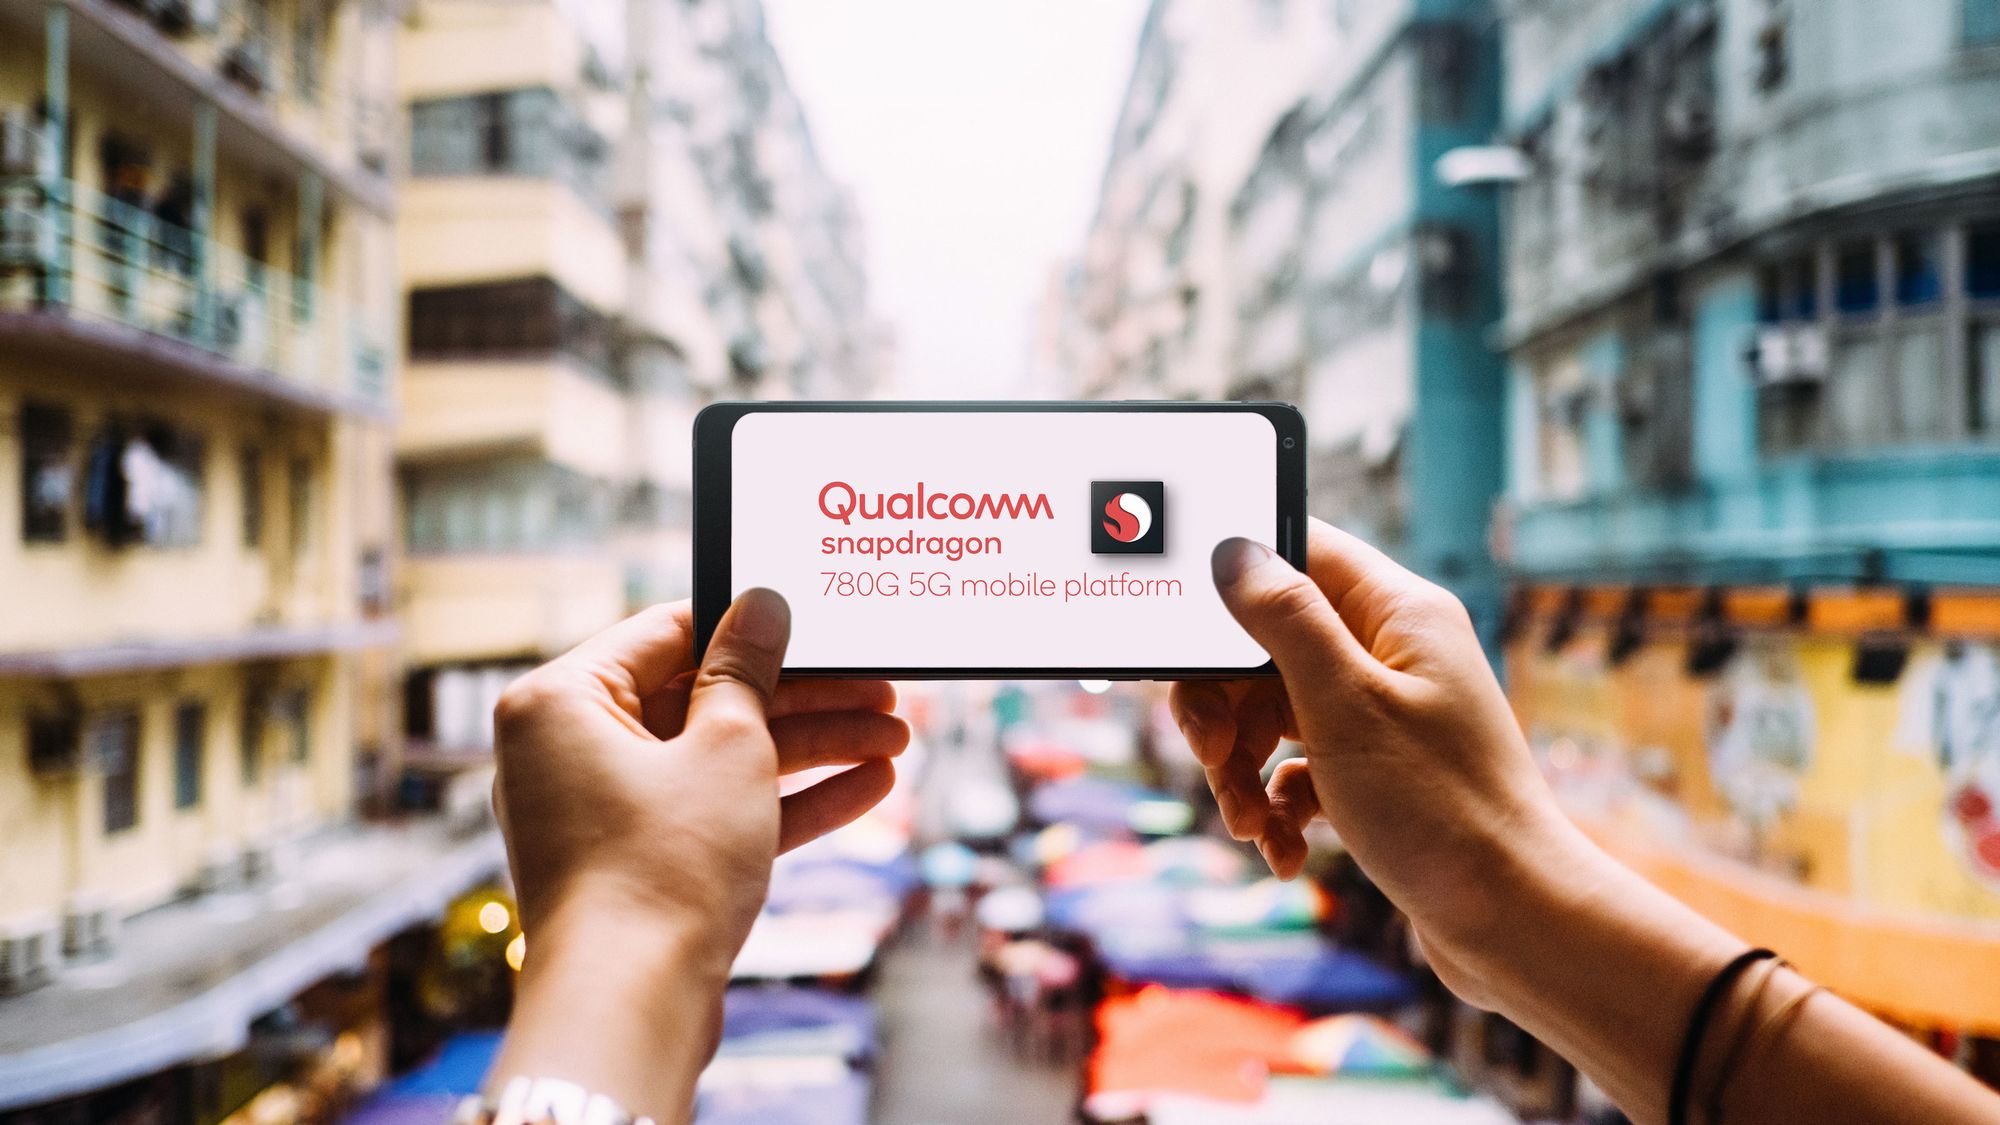 Qualcomm präsentiert Snapdragon 780G